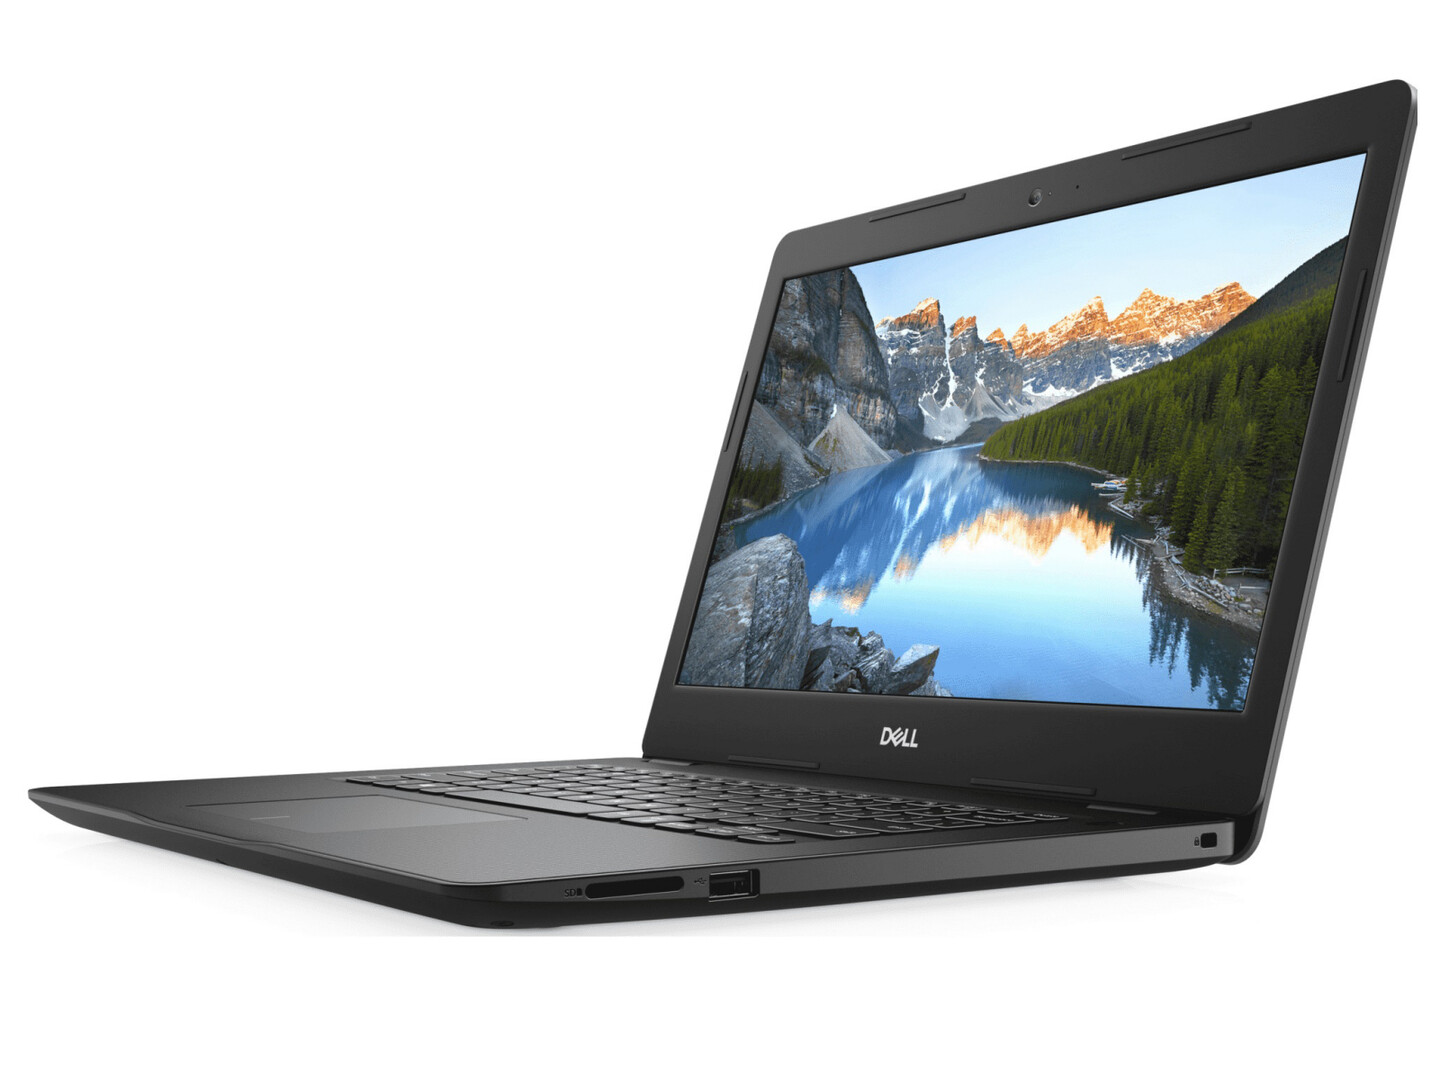 Đánh giá laptop Dell Inspiron 14 3493: Hiệu năng tốt, GPU không có gì nổi bật, Chuyên trang tư vấn laptop